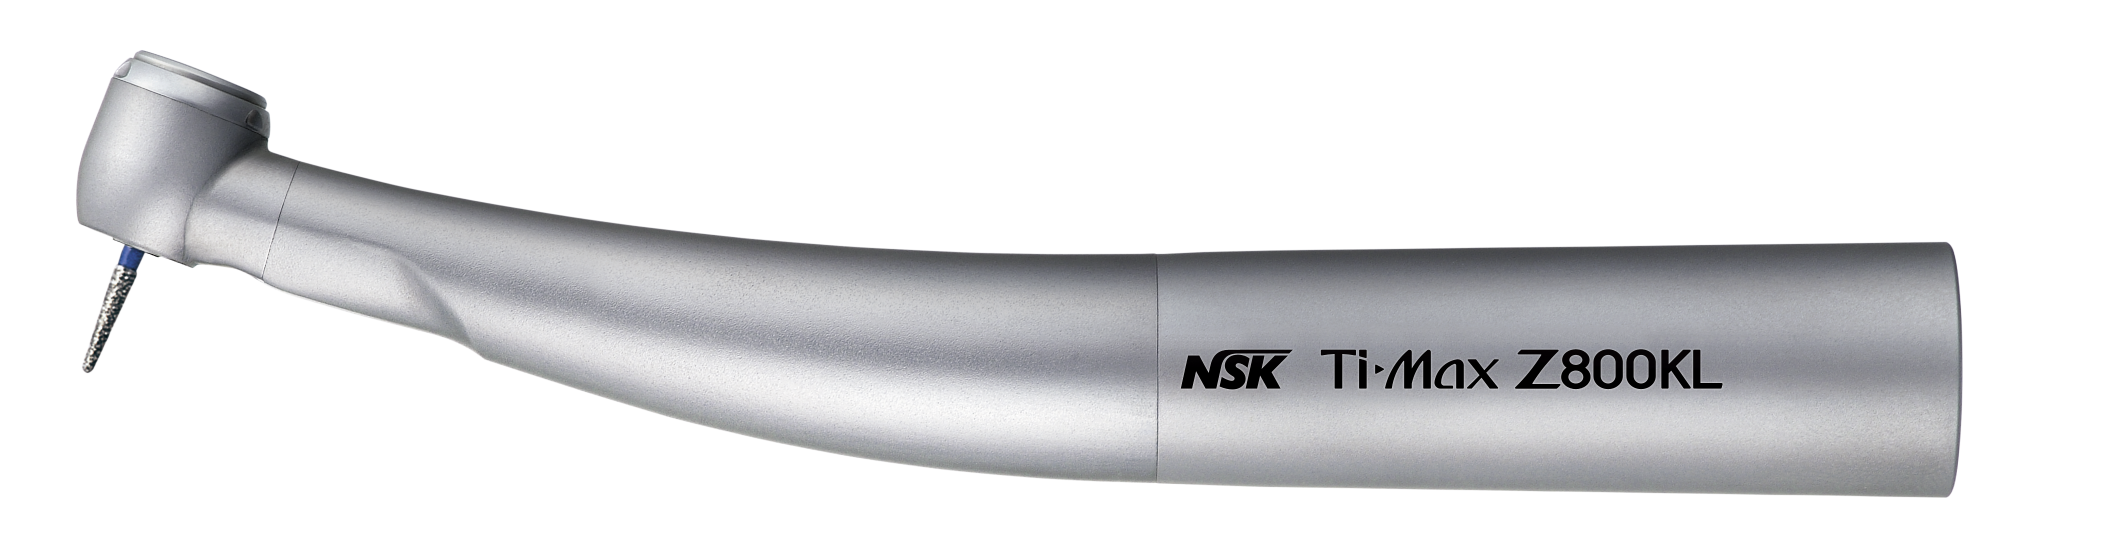 NSK Ti-Max Z800KL, Mini-Lichtturbine, 21 Watt, KaVo MULTIflex-Anschluss  -  4-fach Spray, Druckknopfspannzange, Keramik-Kugellager, Microfilter, kratzfest  | Art.Nr.:  P1112